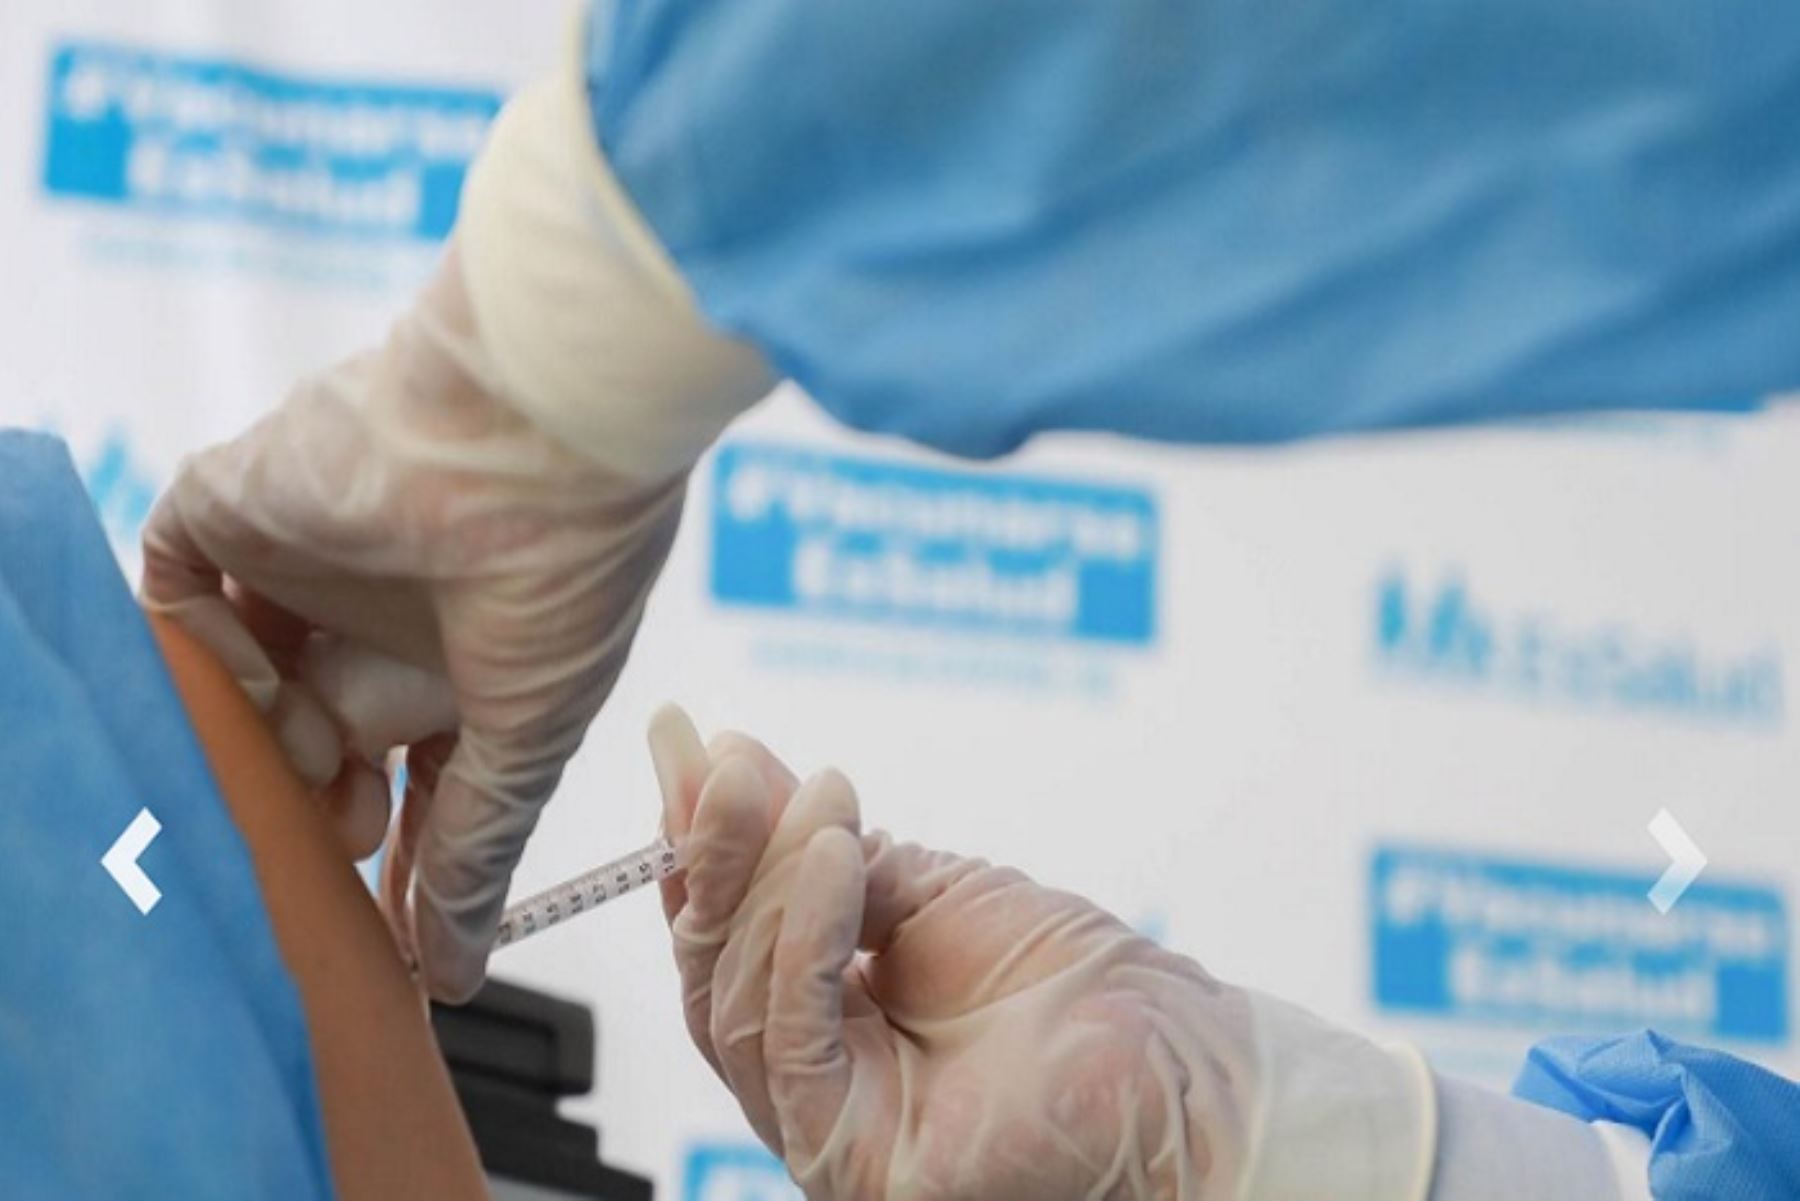 La Red de Salud Valle del Mantaro, región Junín, acelerará la vacunación contra la covid-19 y este viernes 23 aplicará la primera dosis a los mayores de 30 años. ANDINA/Difusión